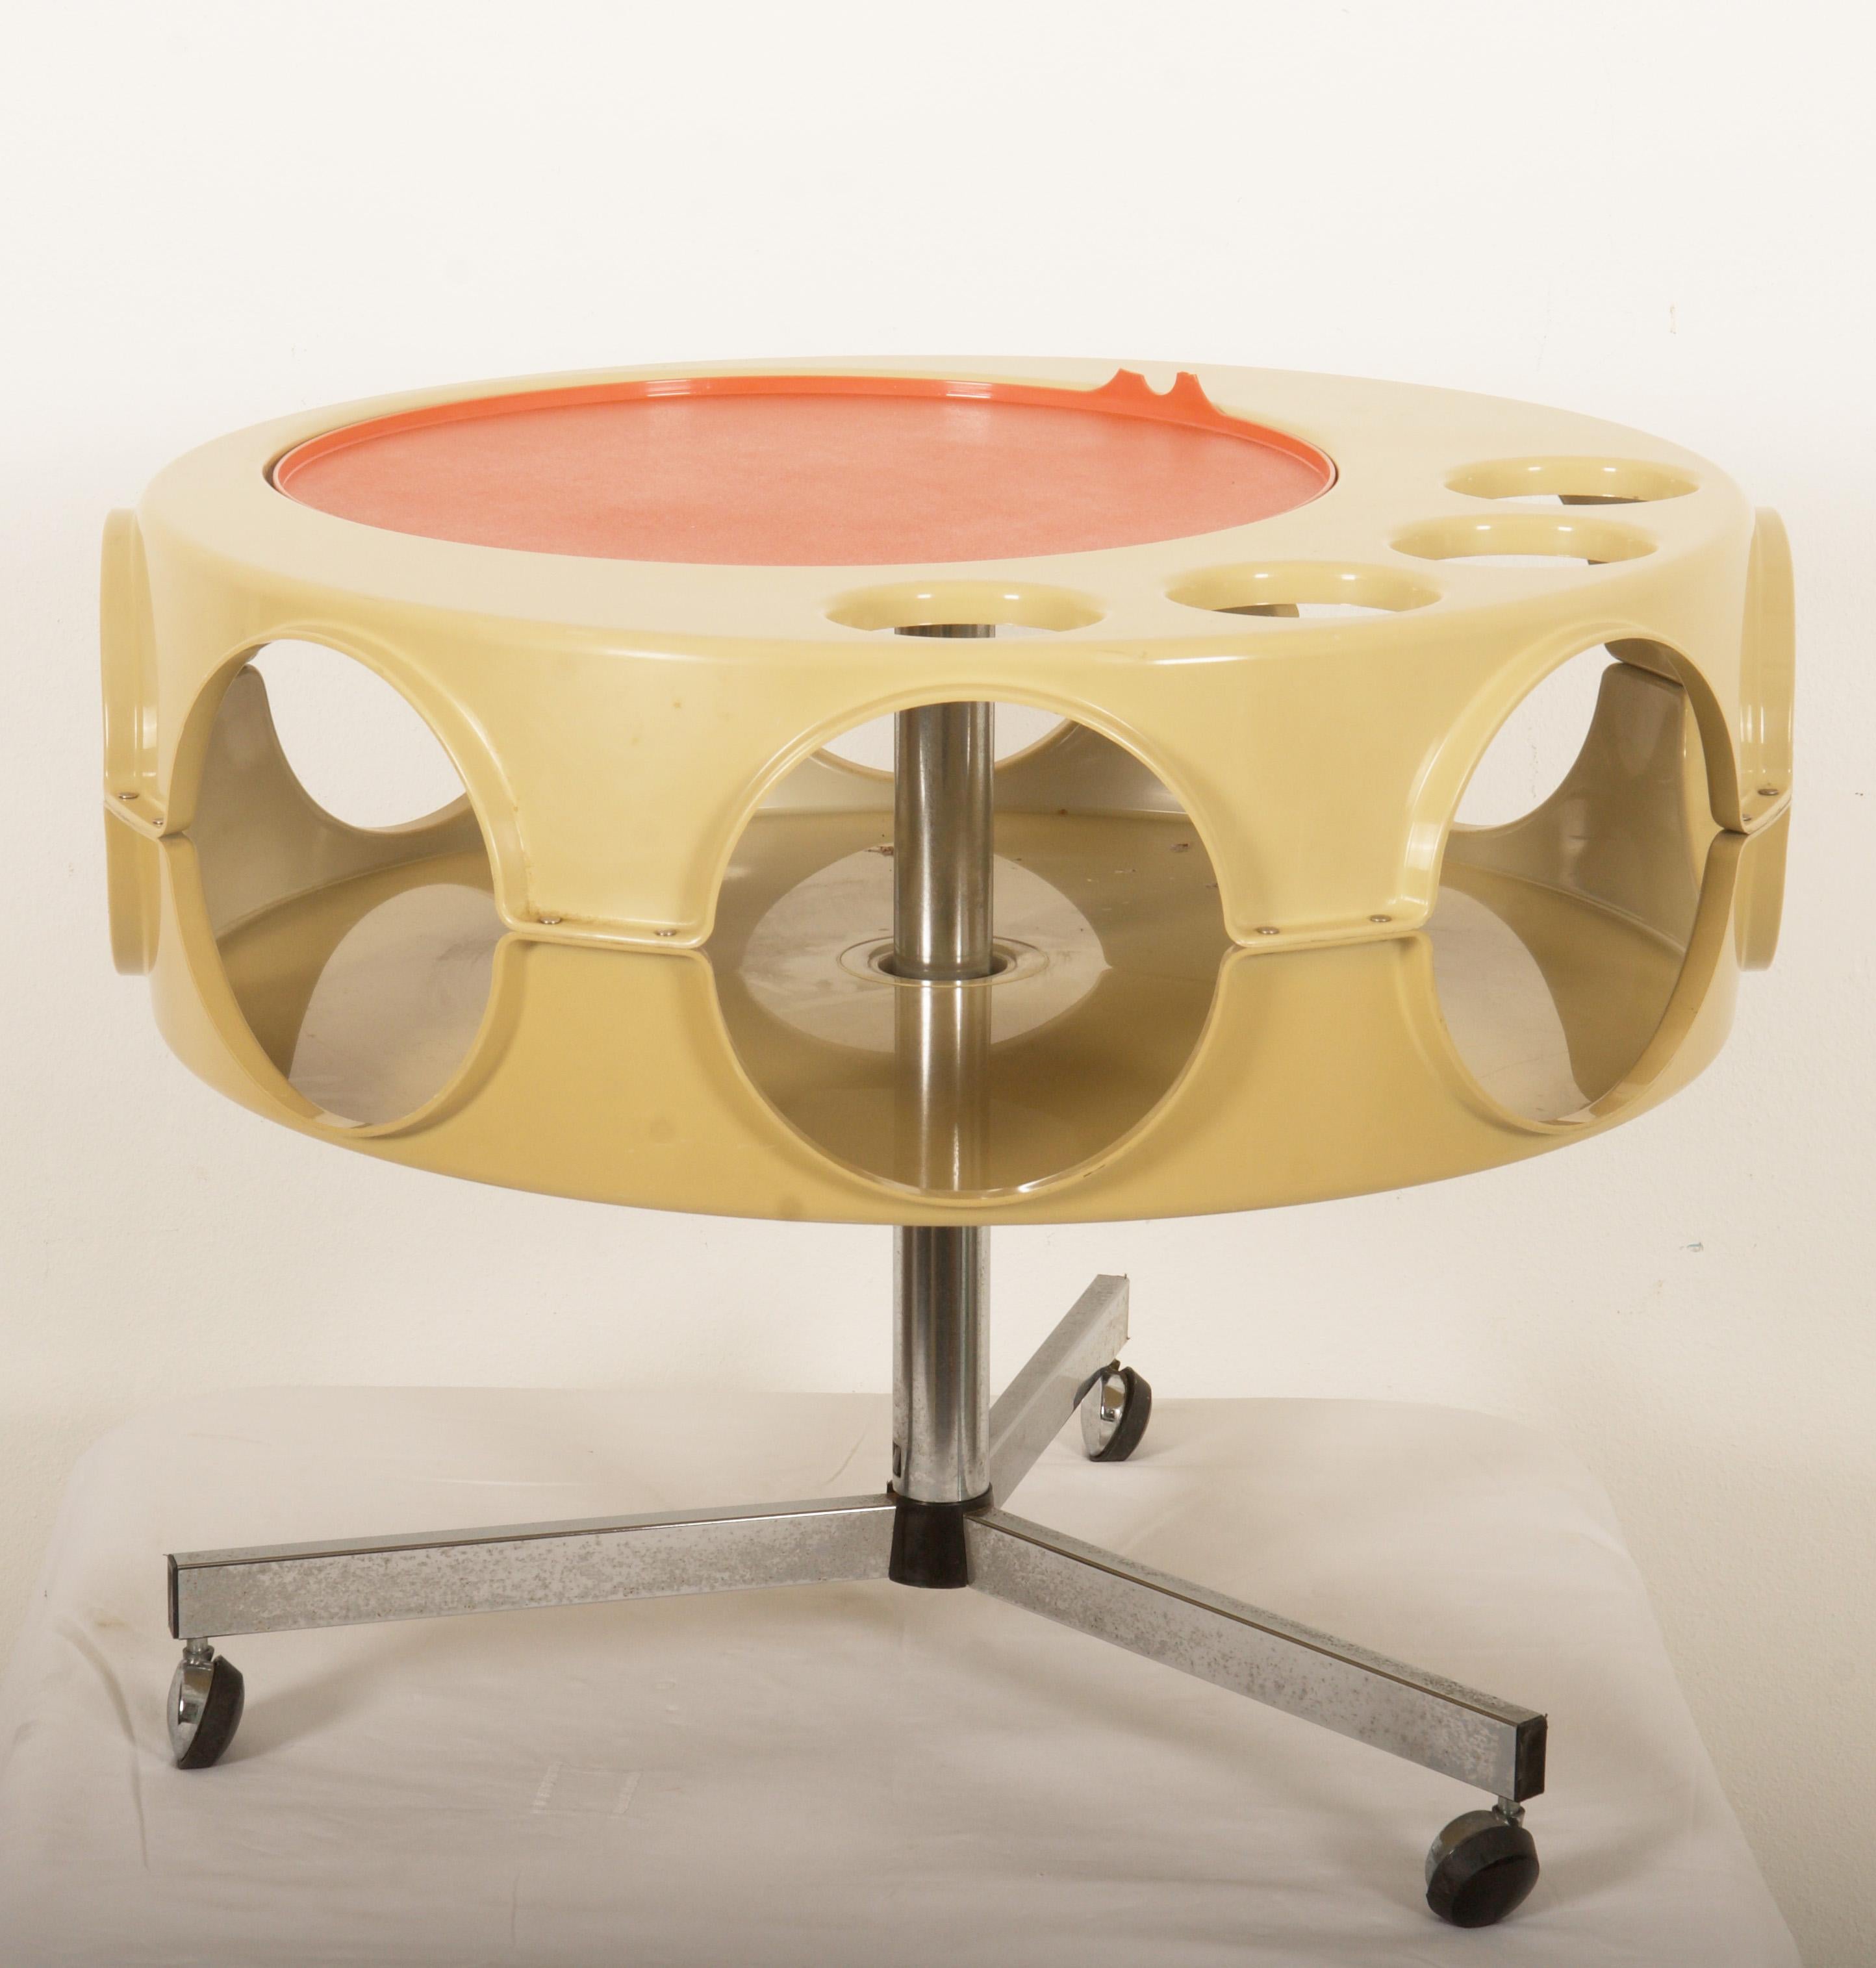 Einzigartiger 'Rotobar'-Bartisch von Curver Niederlande aus den 1970er Jahren. Der Tisch ist drehbar und verschiebbar. Mit einer Reihe von praktischen Fächern für z.B. Getränkeflaschen in Kombination mit Gläsern. Der orange/rote Plastiktisch hat den